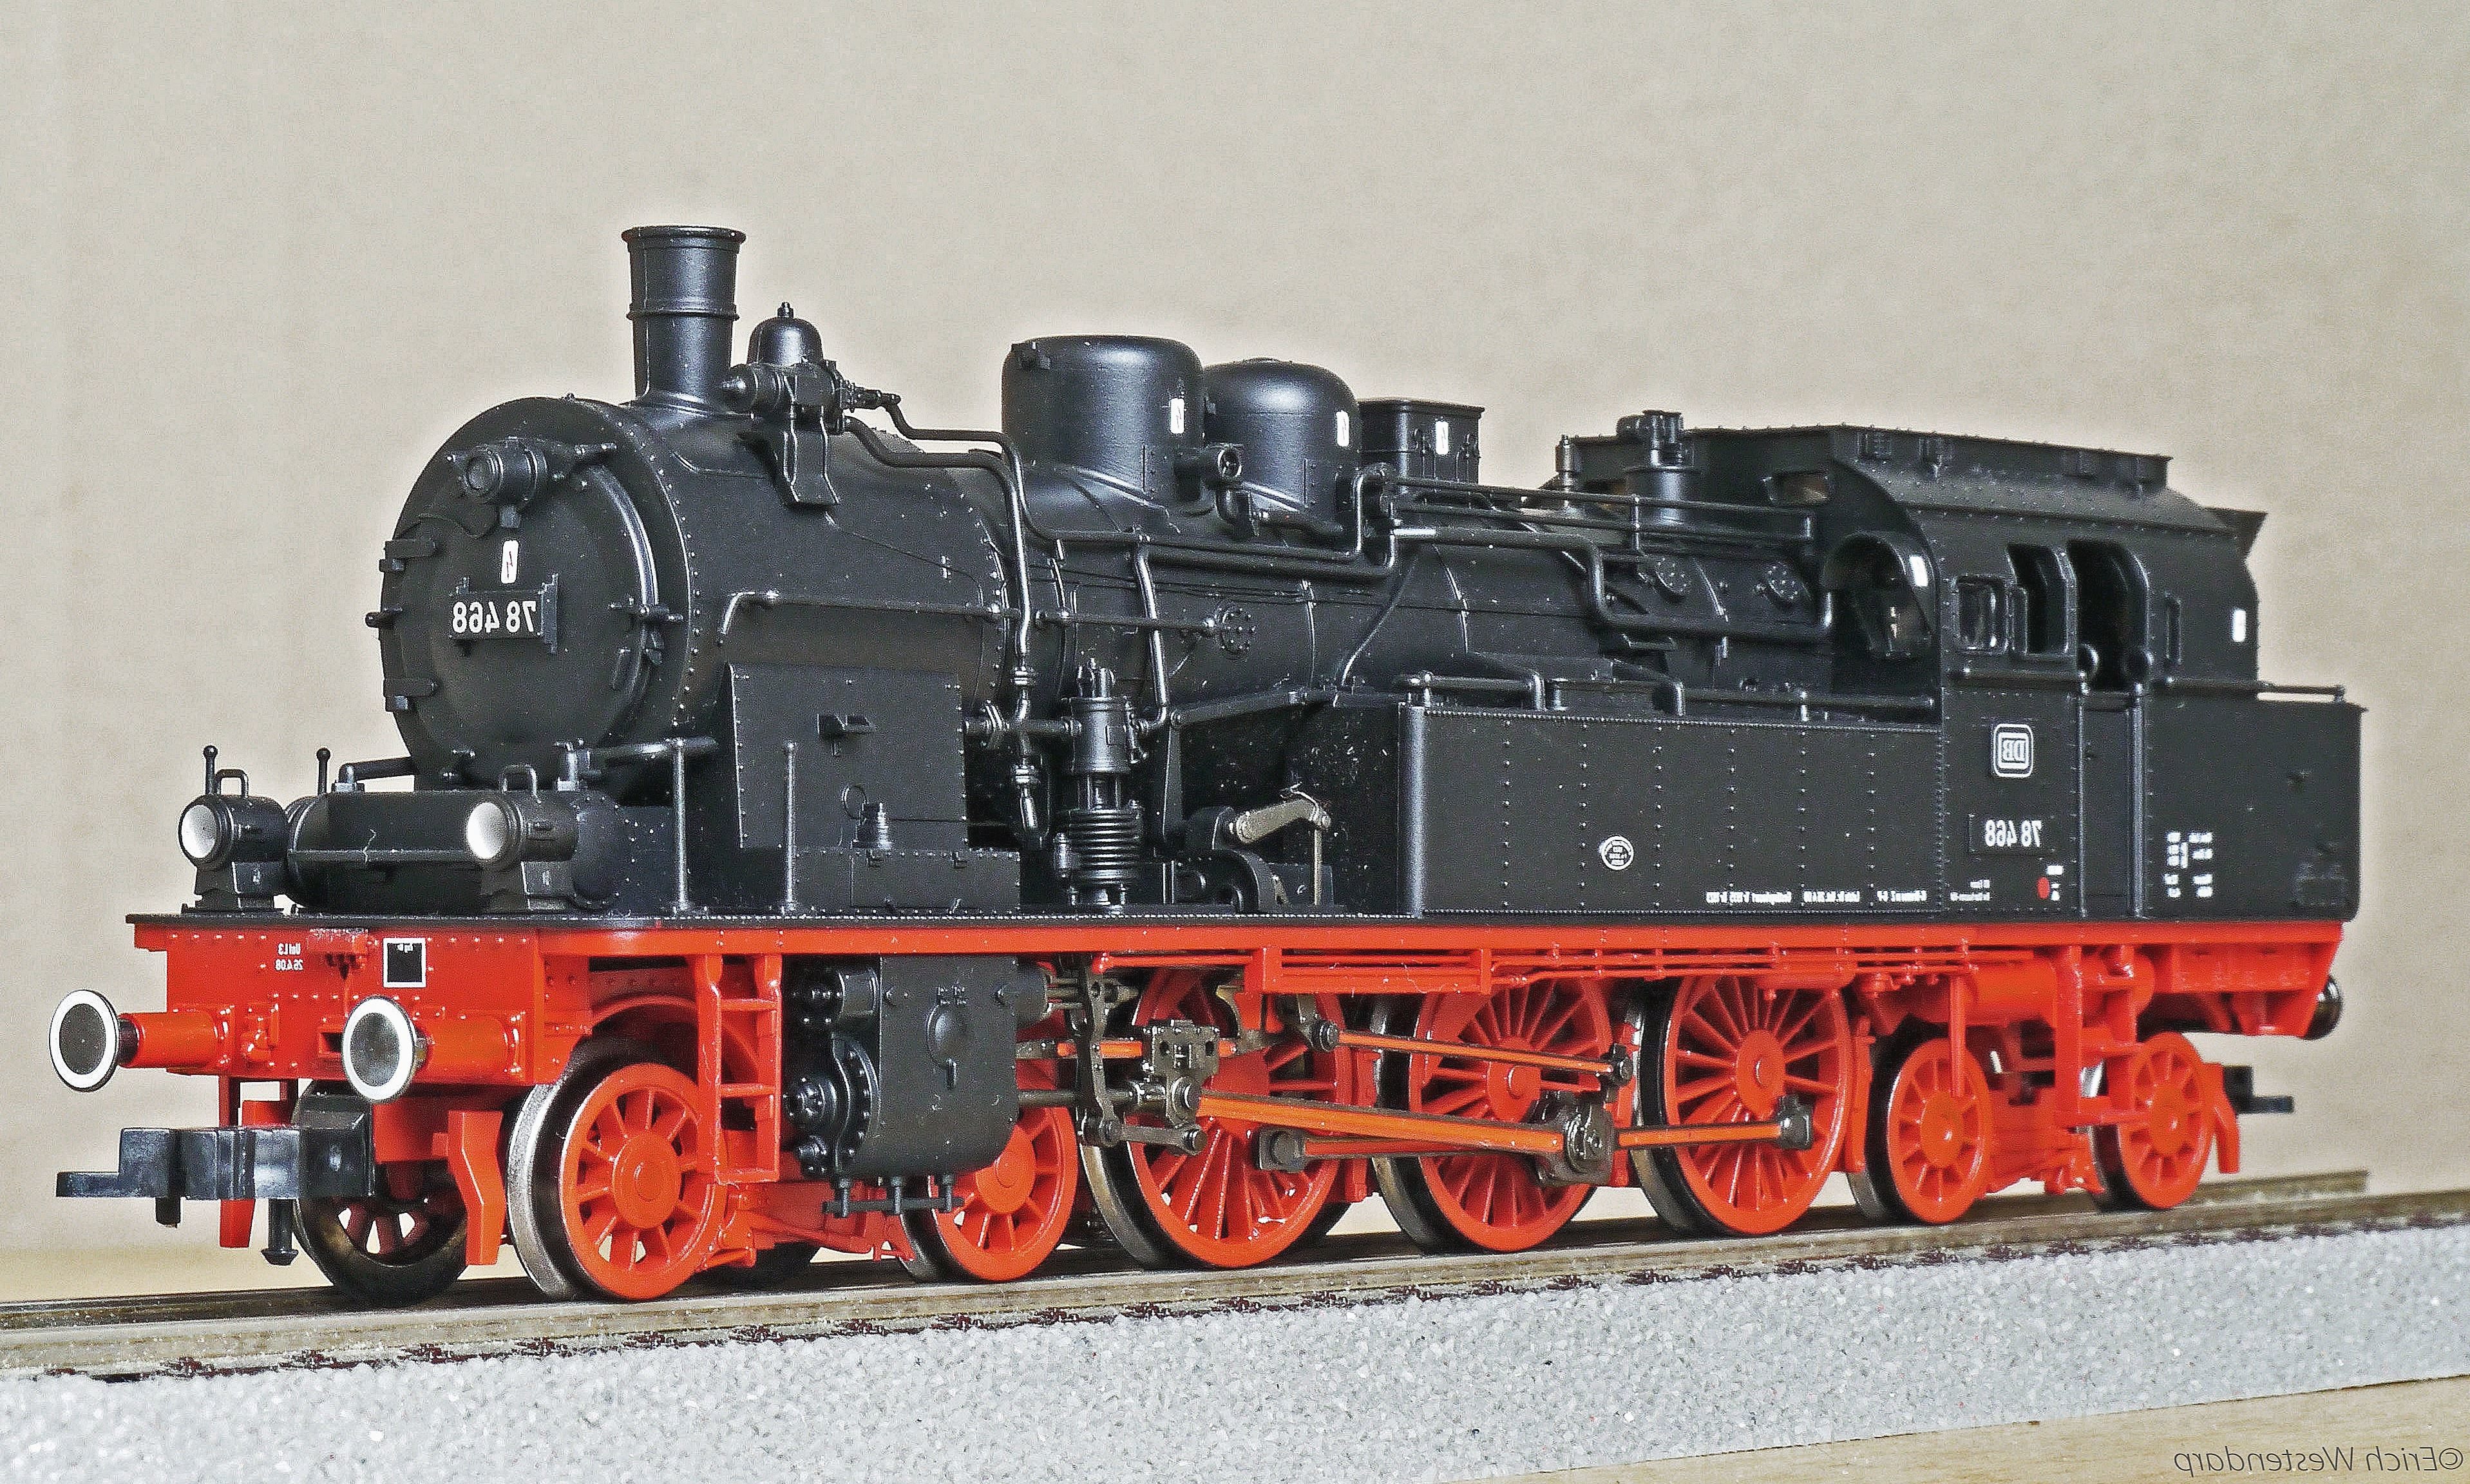 Free picture: toy, steam locomotive, model, locomotive, steam engine ...